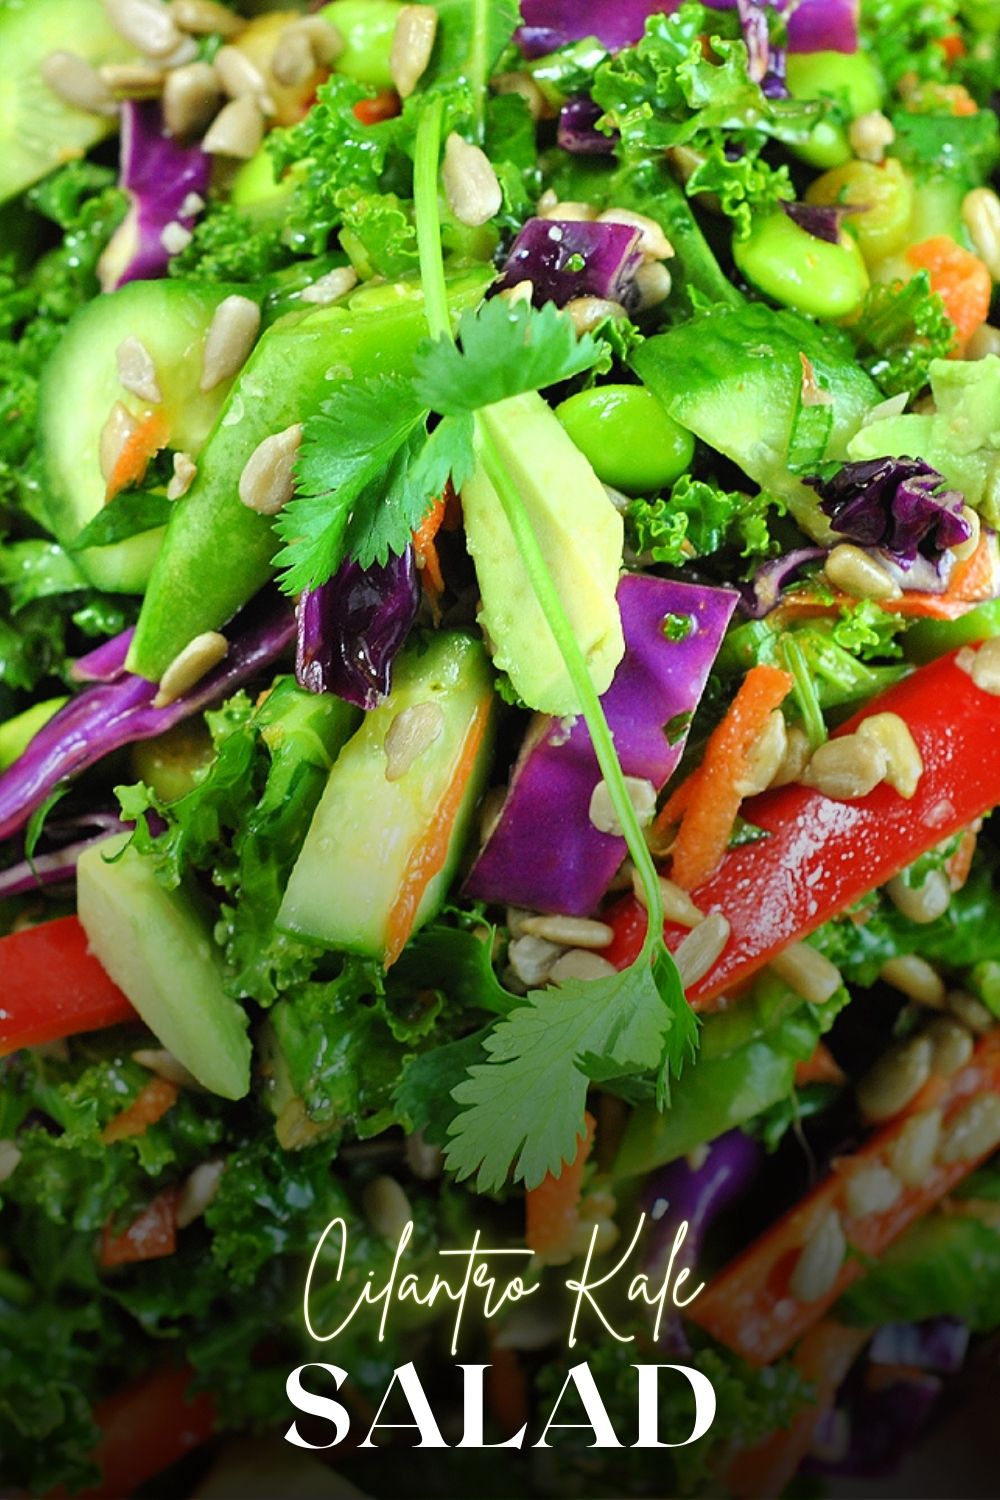 Cilantro Kale Salad with Sesame Ginger Dressing via @preventionrd